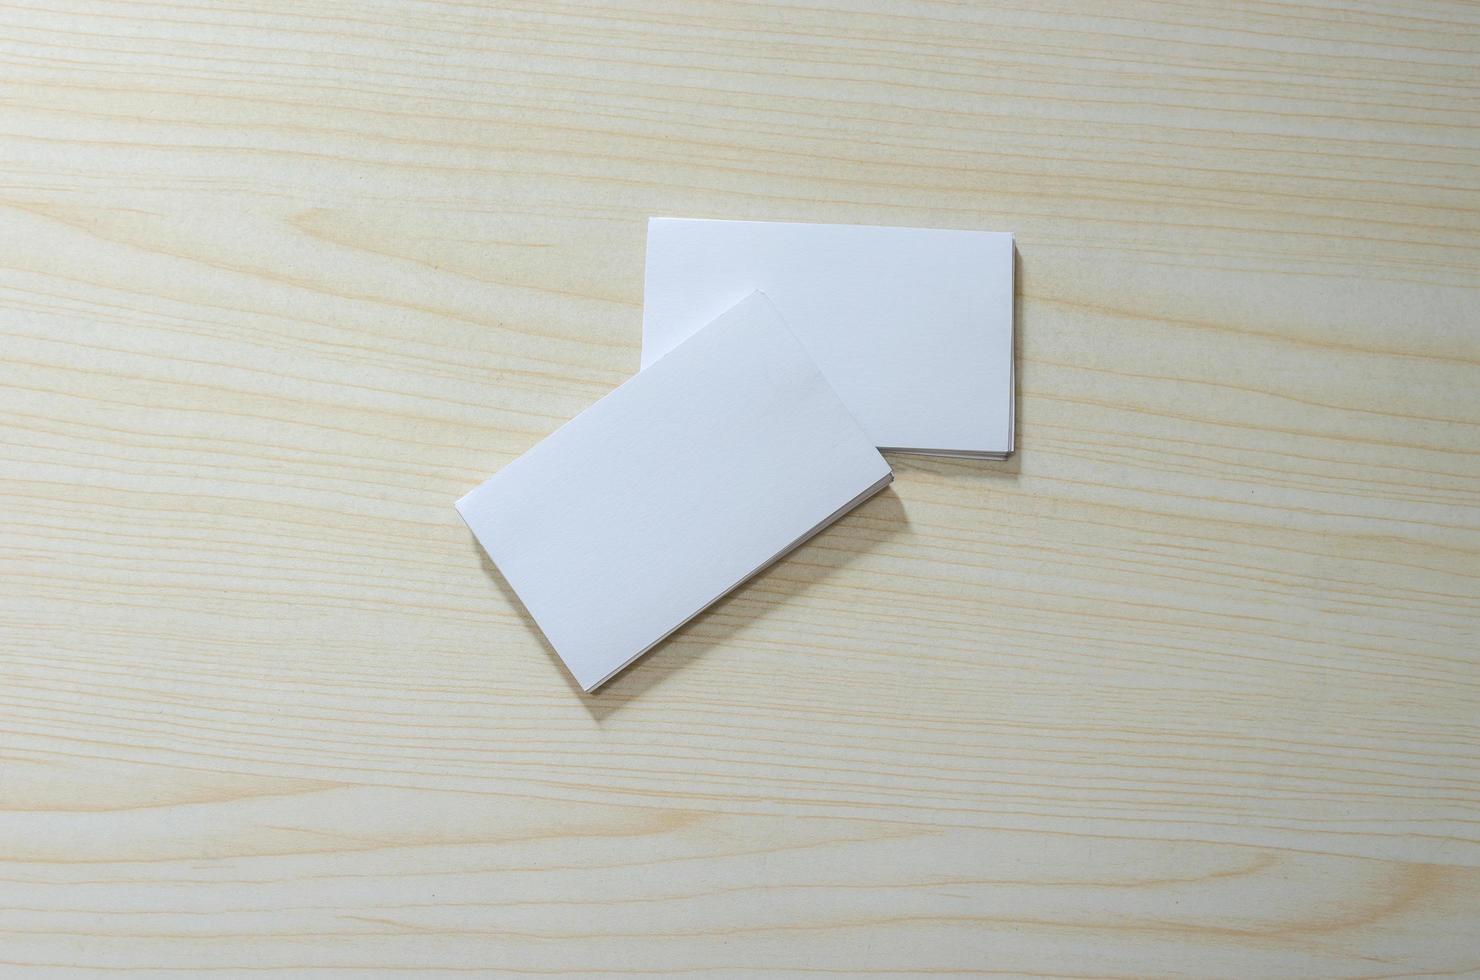 en tom pappersmodell för visitkort på ett träbord foto